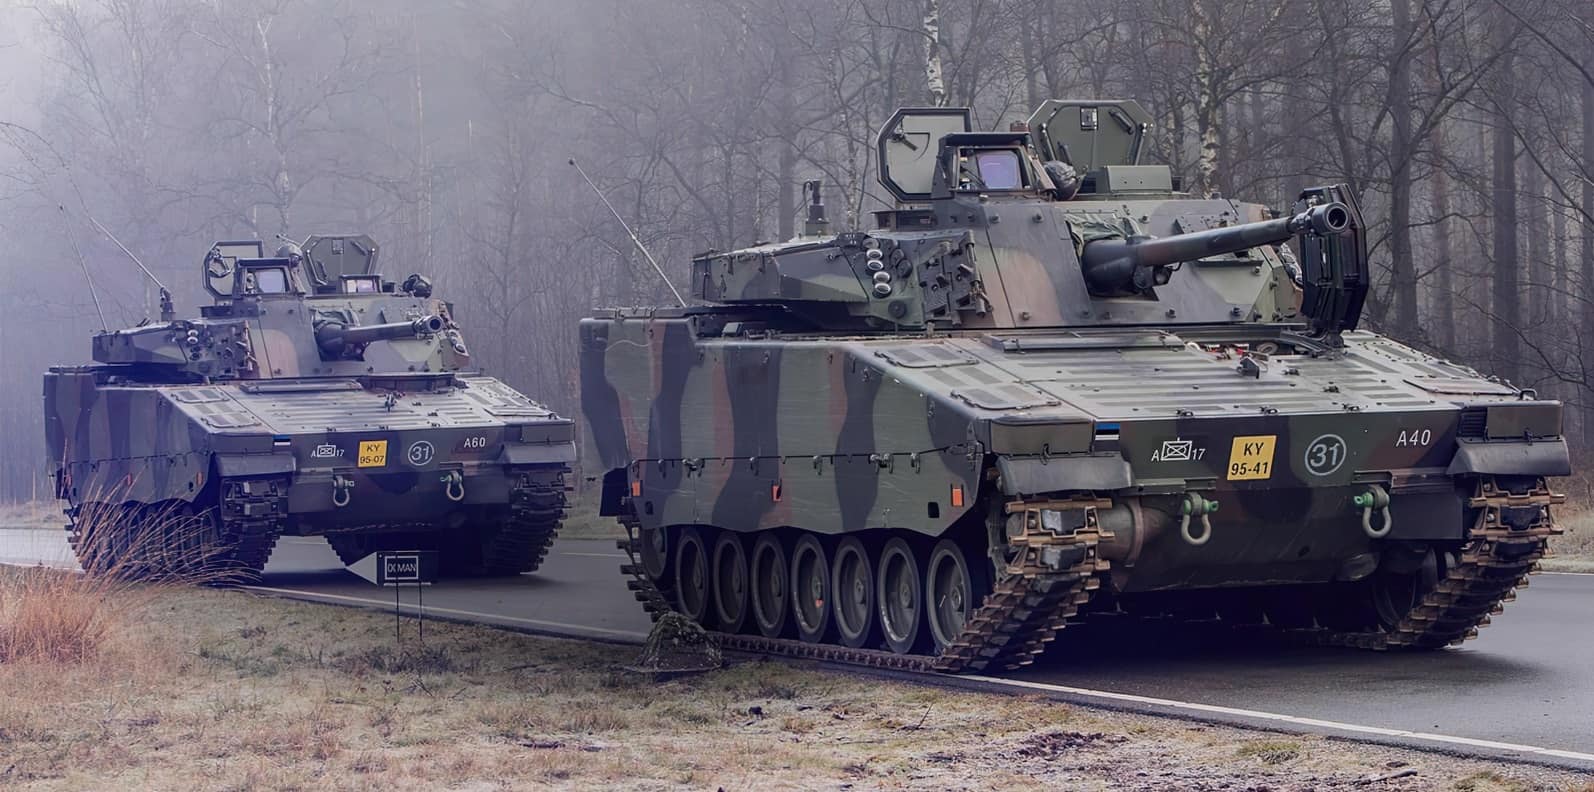 Бронемашини CV90 Збройних сил Естонії. Фото з відкритих джерел